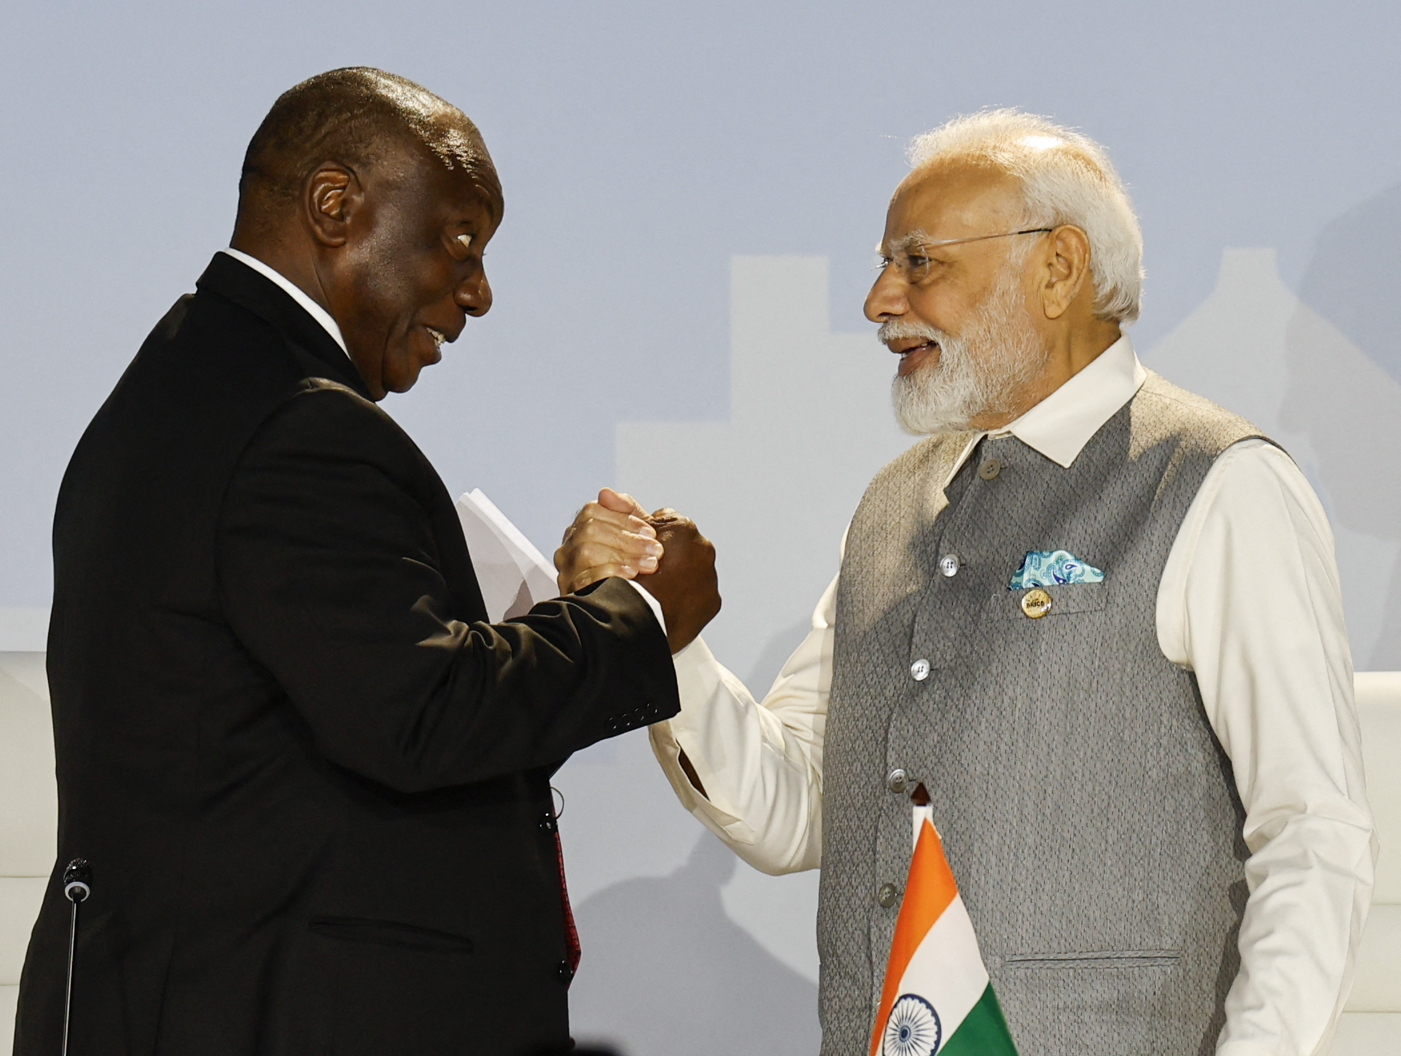 2023 브릭스 정상회의에서 시릴 라마포사 남아공 대통령(왼쪽)과 나렌드라 모디 인도 총리가 악수하는 모습.